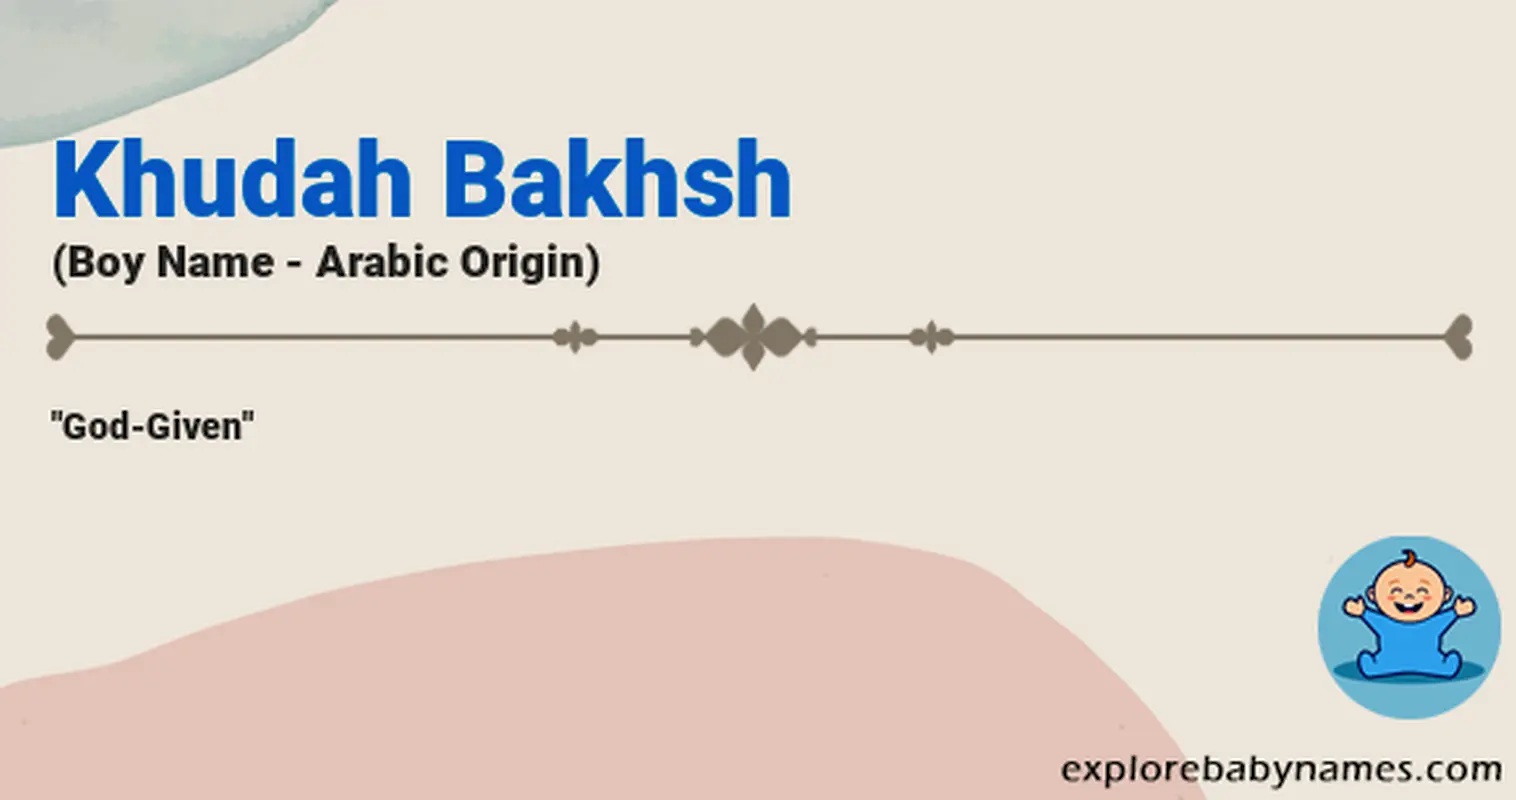 Meaning of Khudah Bakhsh